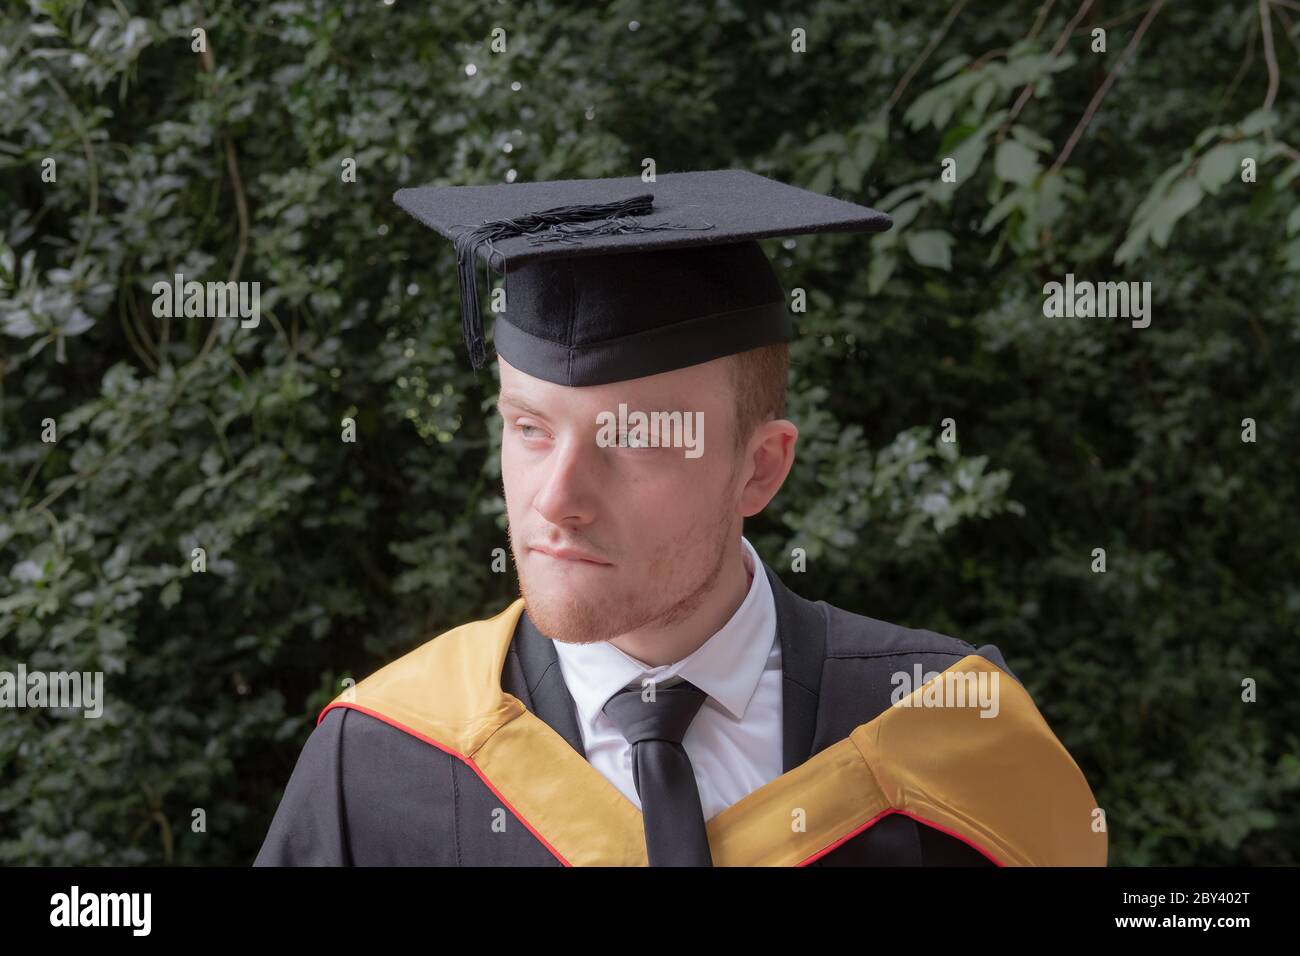 Studente laureato in abbigliamento universitario in attesa di ricevere la laurea da una delle principali università del Regno Unito. Foto Stock